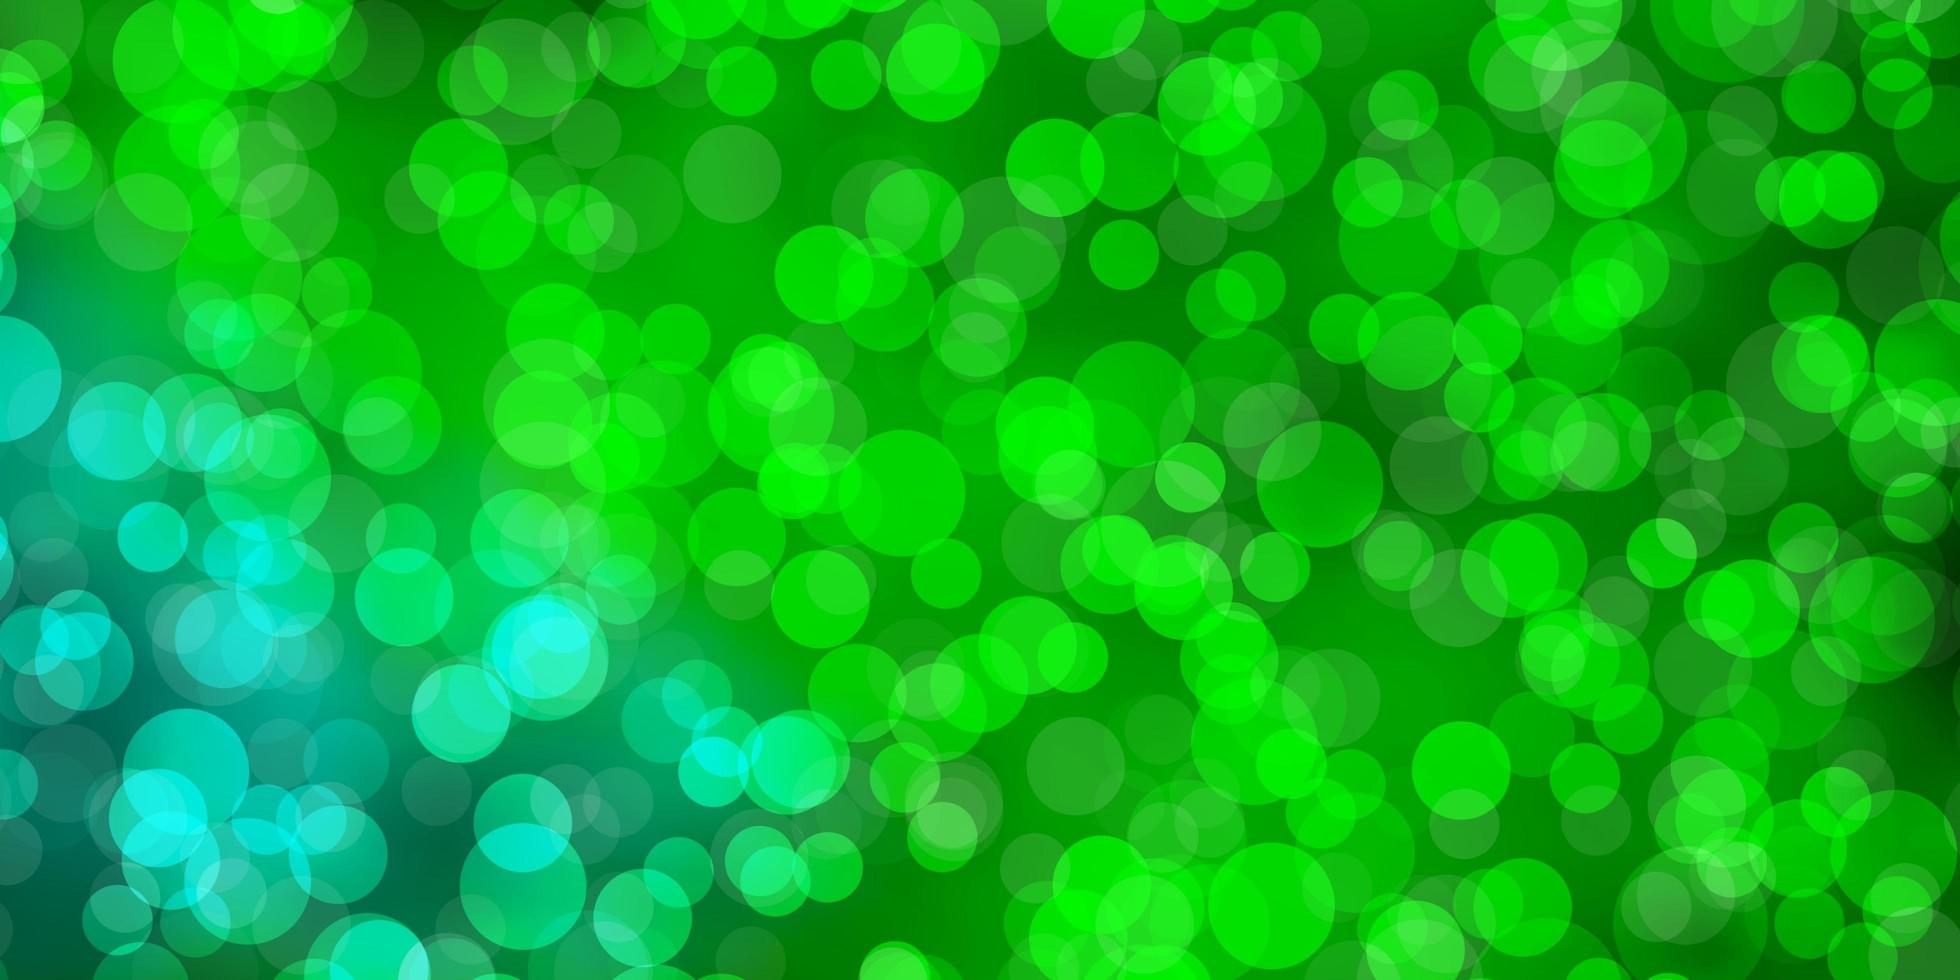 pano de fundo de vetor verde claro com círculos. projeto decorativo abstrato em estilo gradiente com bolhas. padrão para anúncios de negócios.